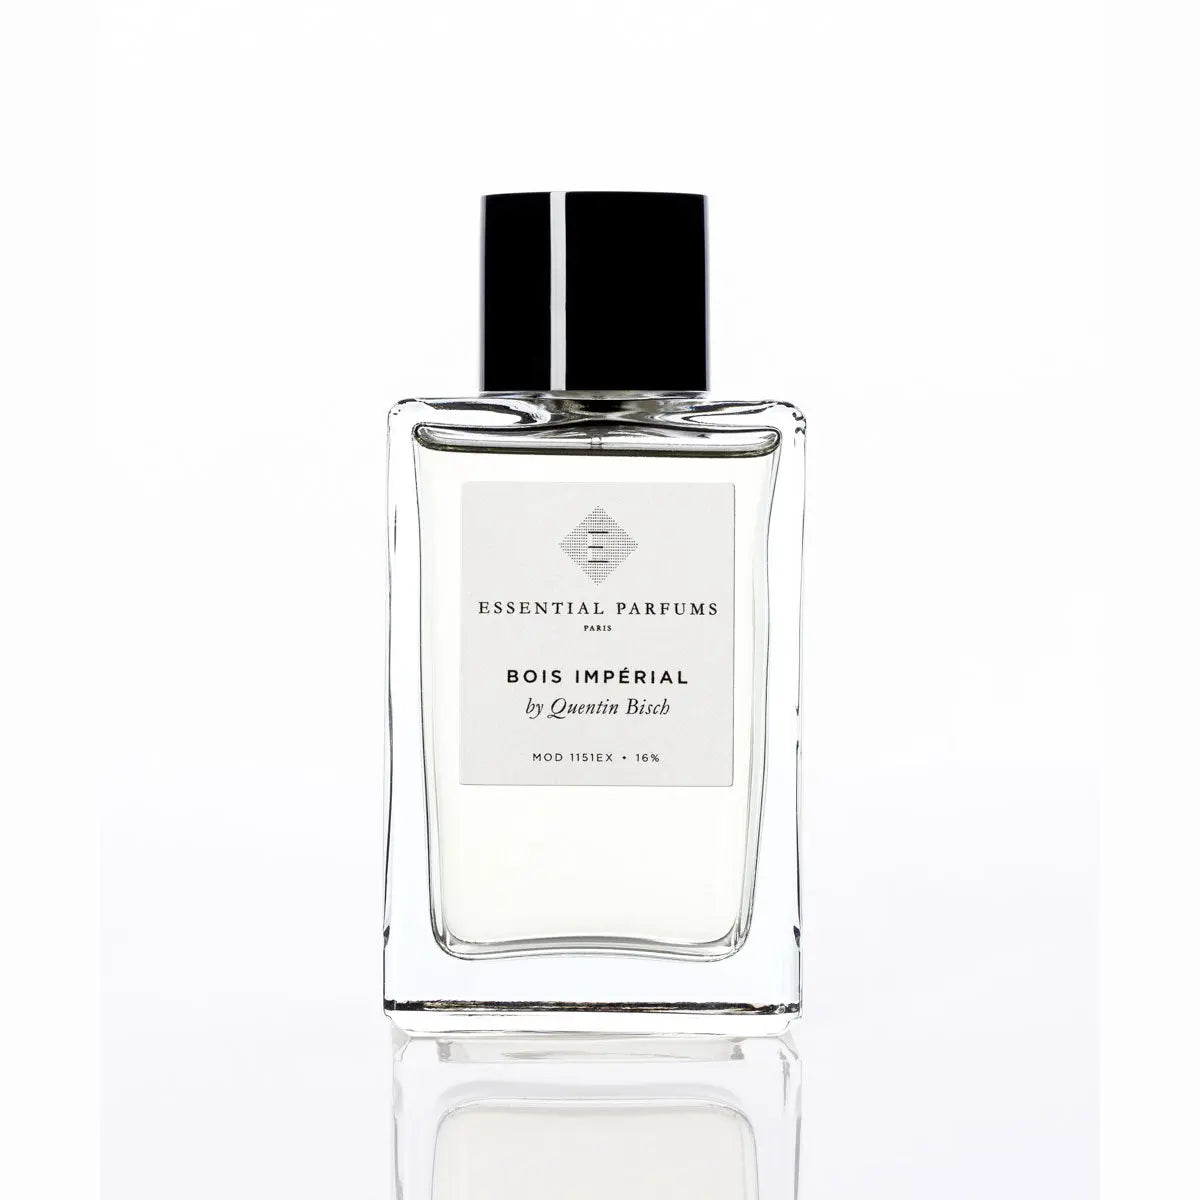 Essential parfums Bois Imperial eau de parfum - 150 ml ricarica